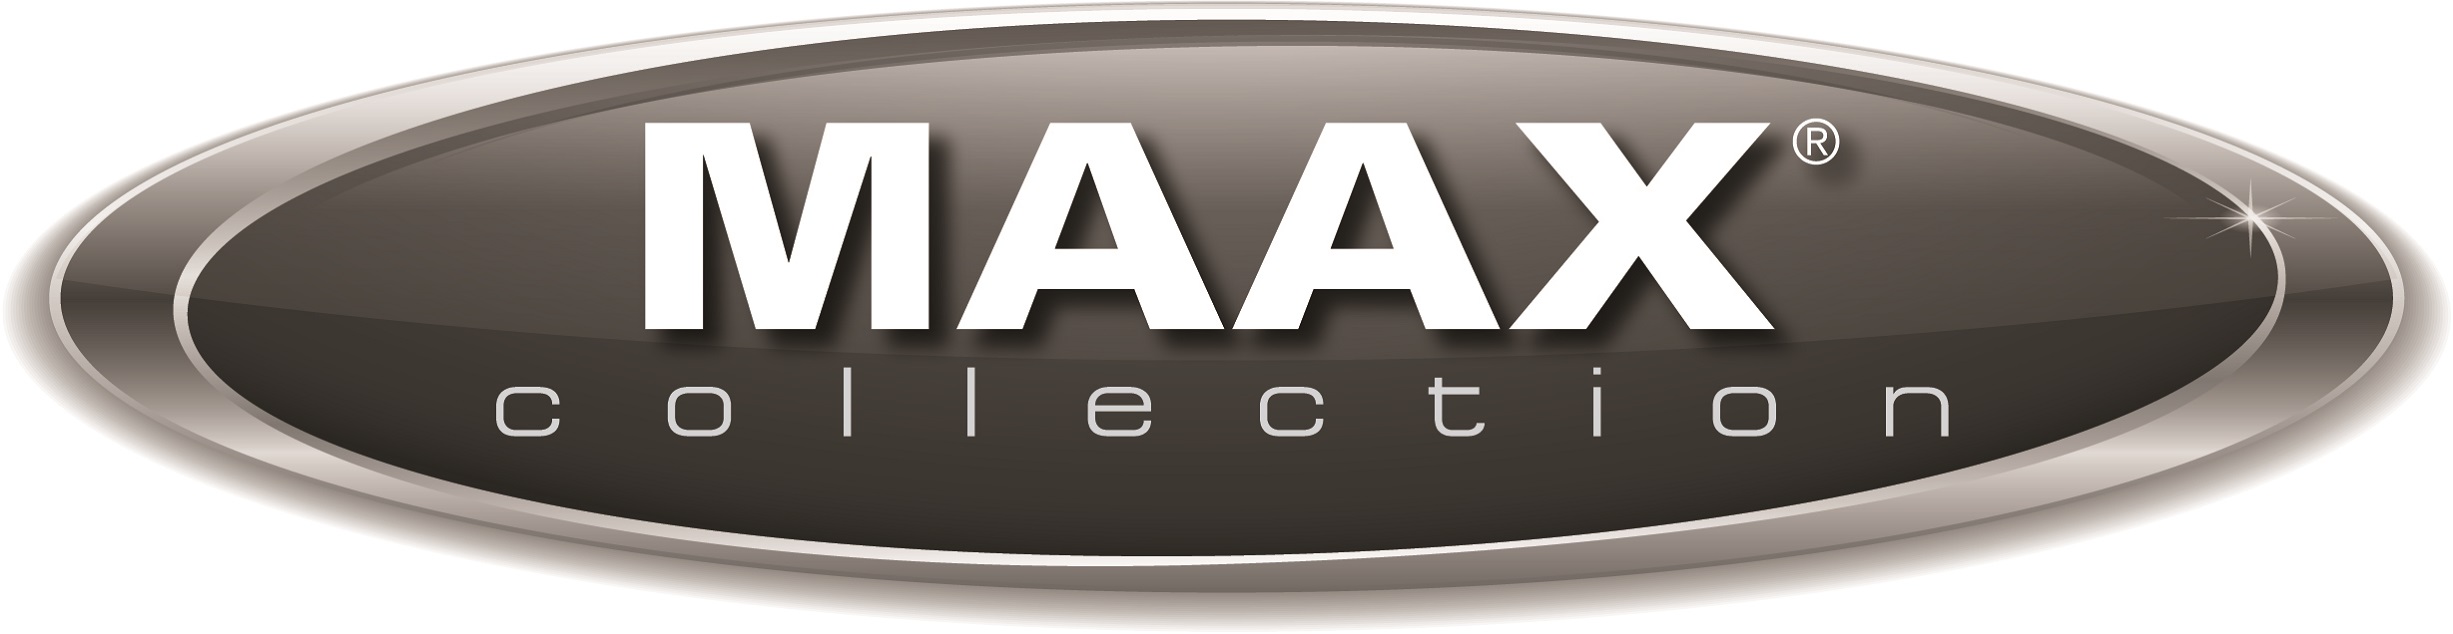 MAAX_2015_logo_3